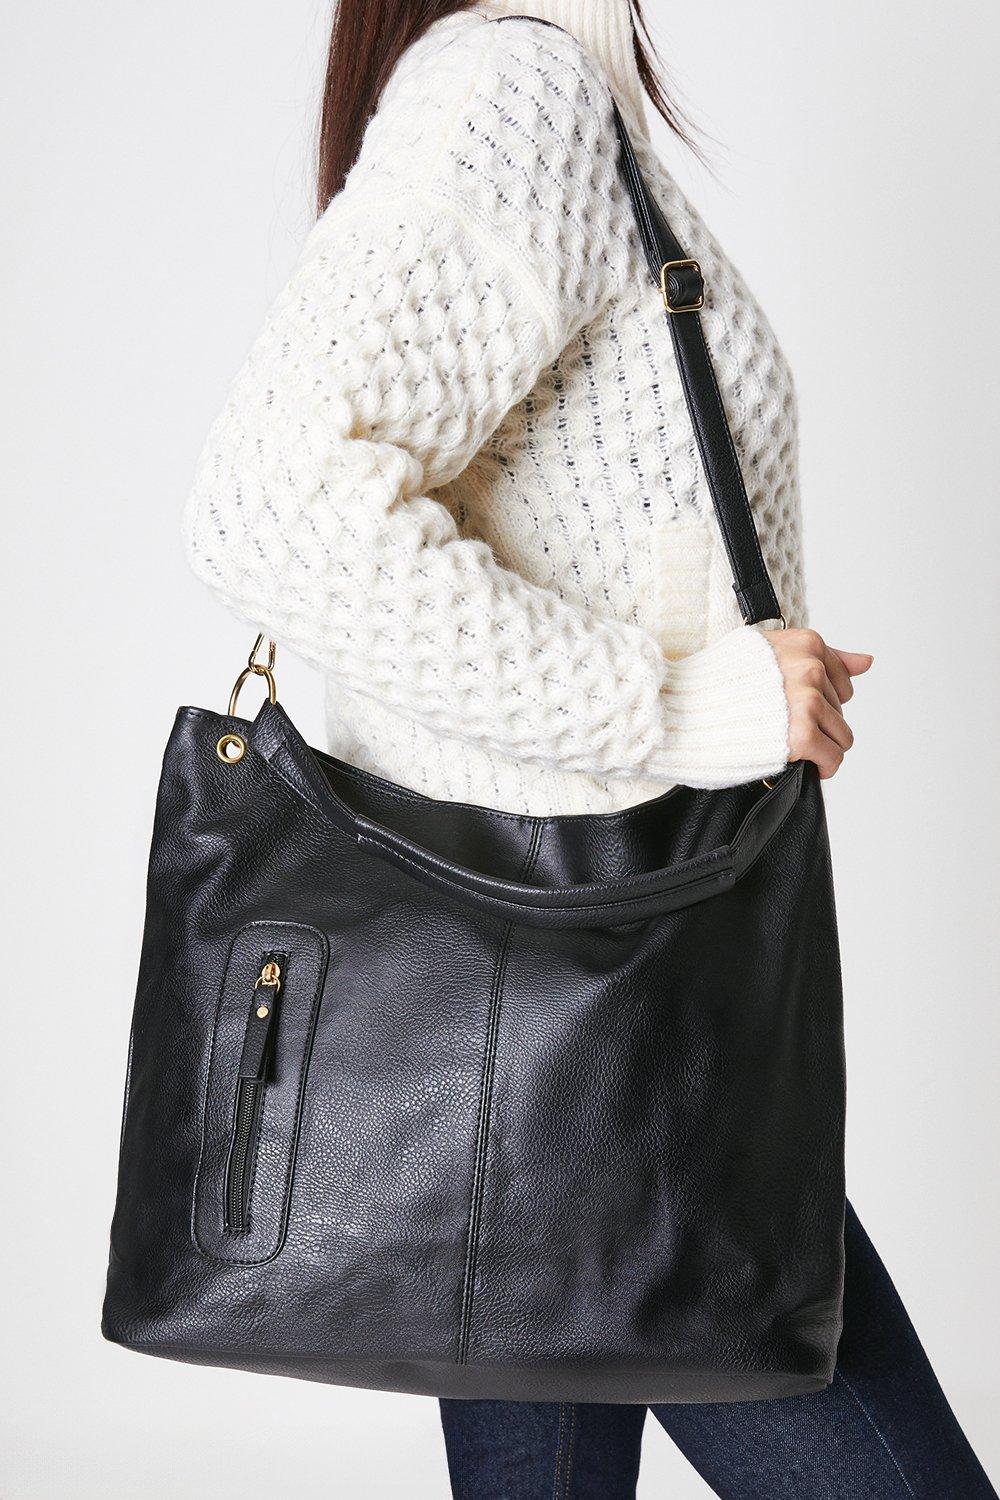 Сумка через плечо Tiana среднего размера с напуском Dorothy Perkins, черный серебристая металлическая рама для сумок рюкзаков сумок кошельков металлическая алюминиевая рама для сумок аксессуары для сумок детали